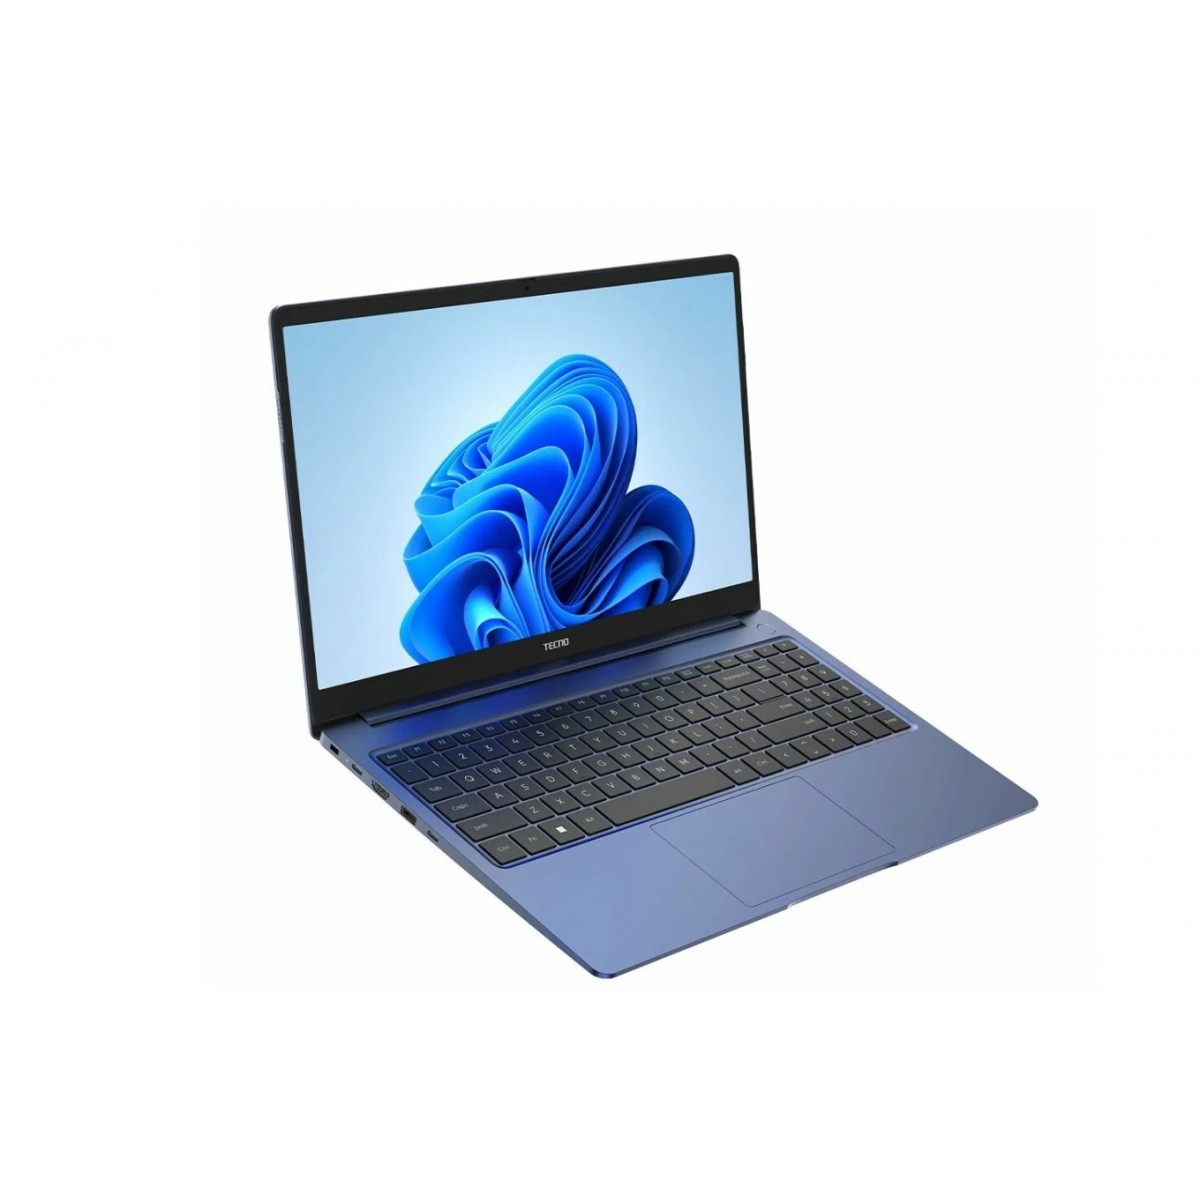 Ноутбук Tecno MEGABOOK t1 2023 i5. Ноутбук Tecno t1 i5 16+512g (win 11) Denim Blue. Ноутбук Techno t1 i3 12/256. 15.6" Ноутбук Tecno MEGABOOK t1 голубой. Tecno t1 обзор